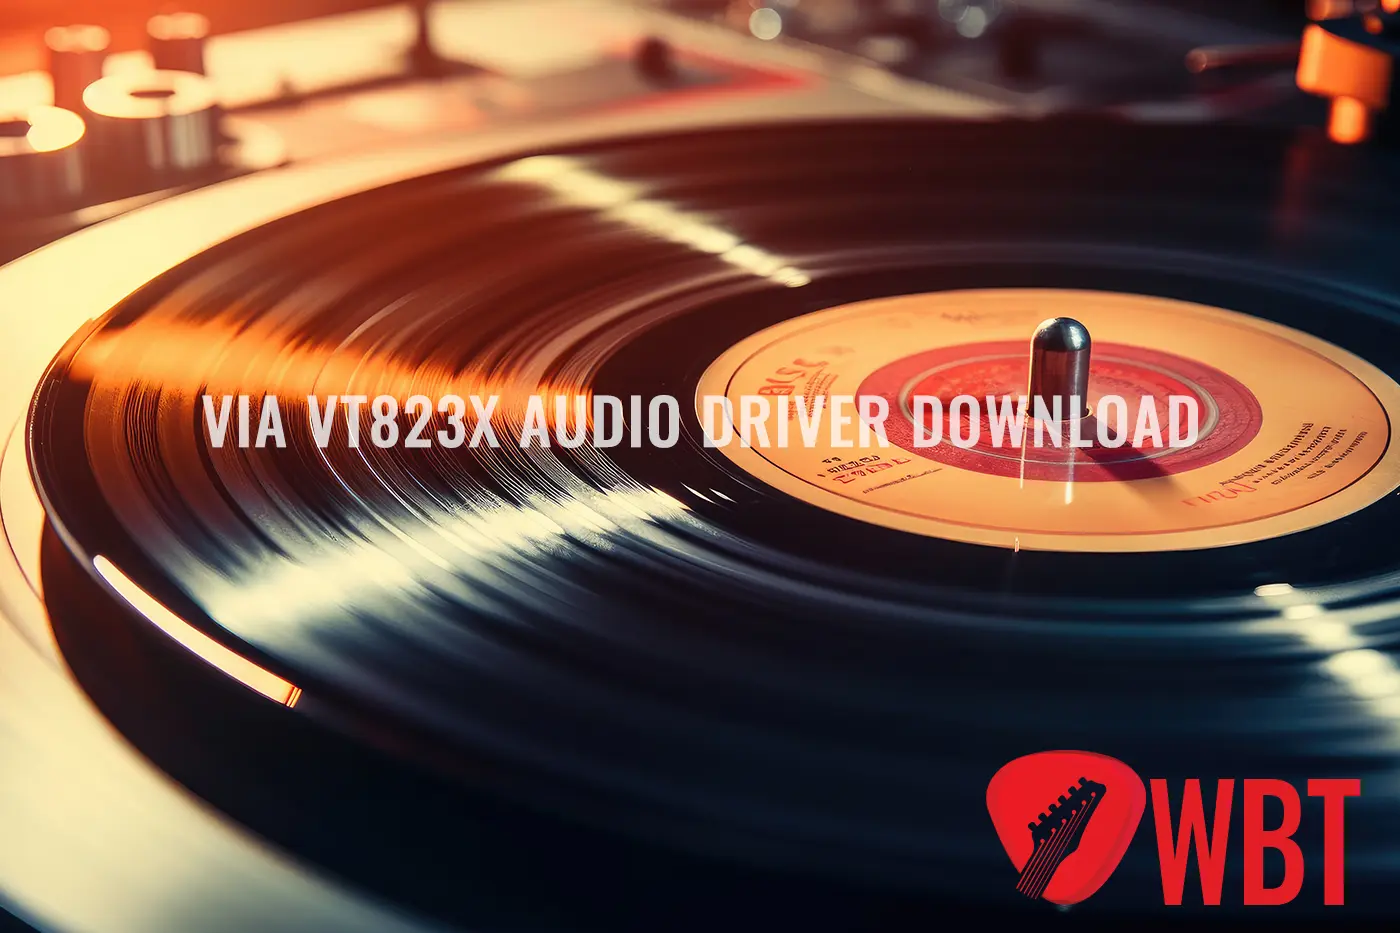 Download del driver audio VIA VT823x